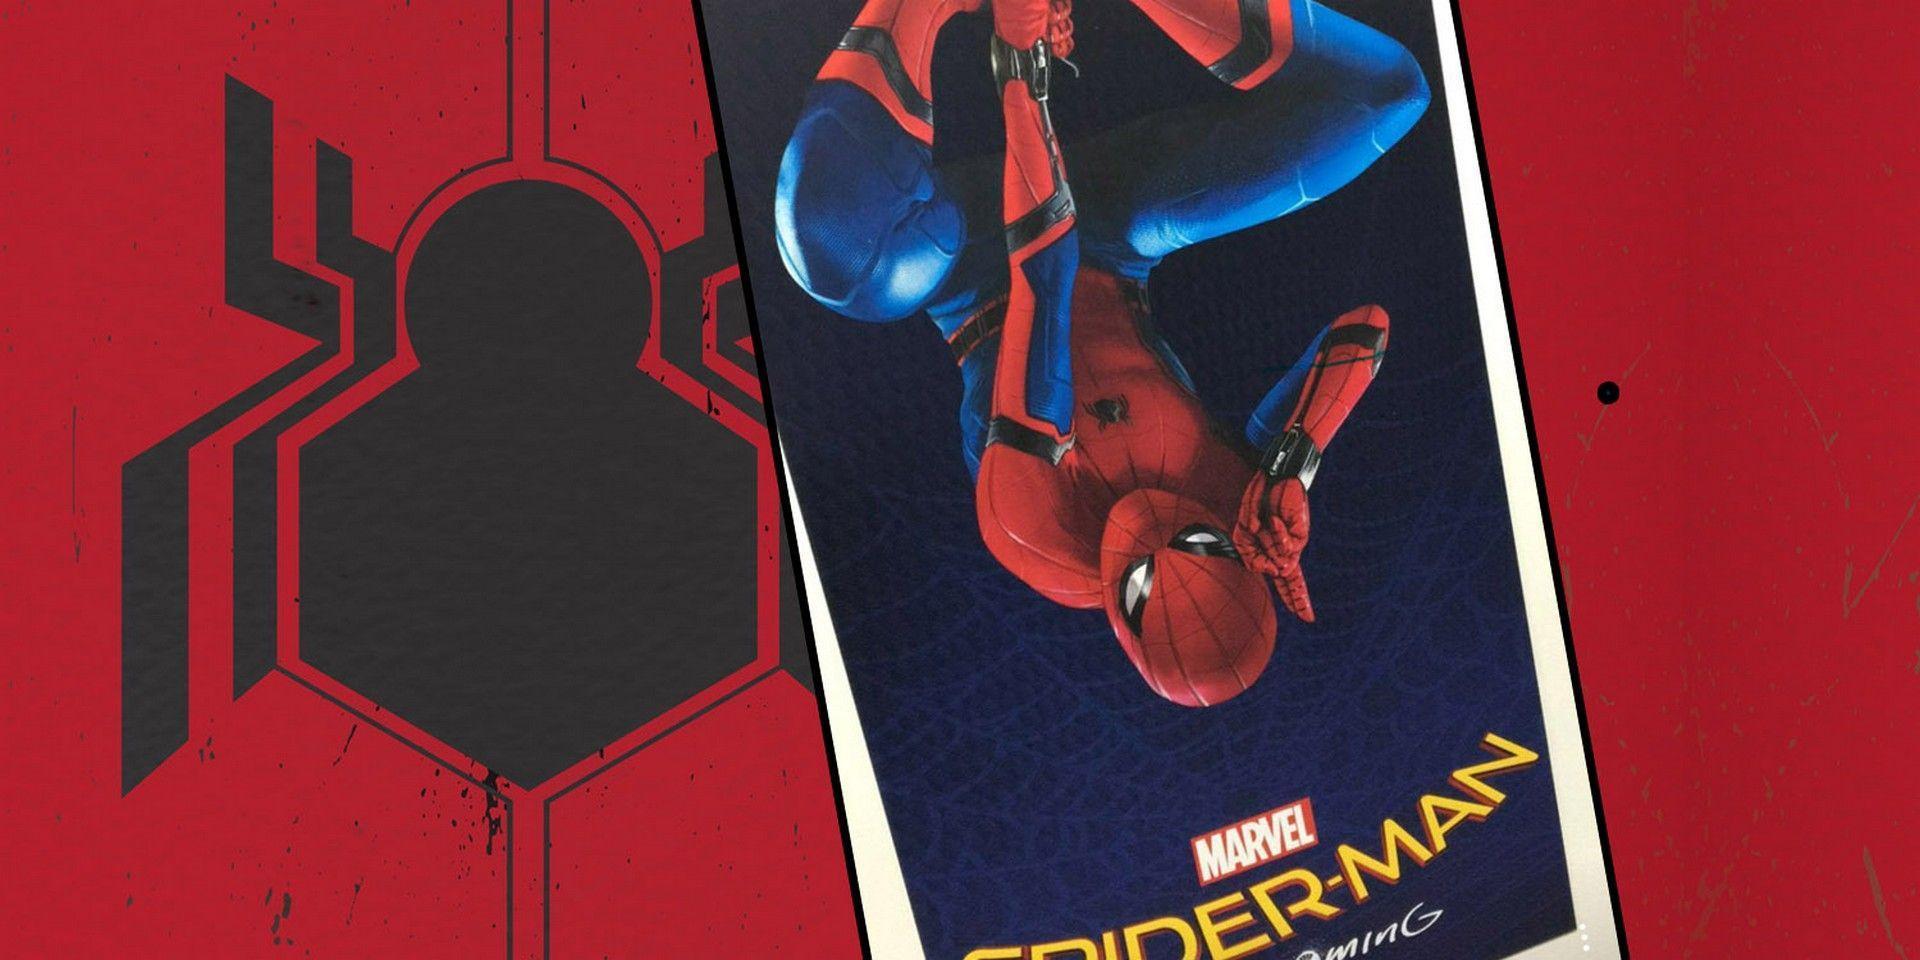 HD Spider Man: Homecoming Wallpaper. Spider Man: Homecoming